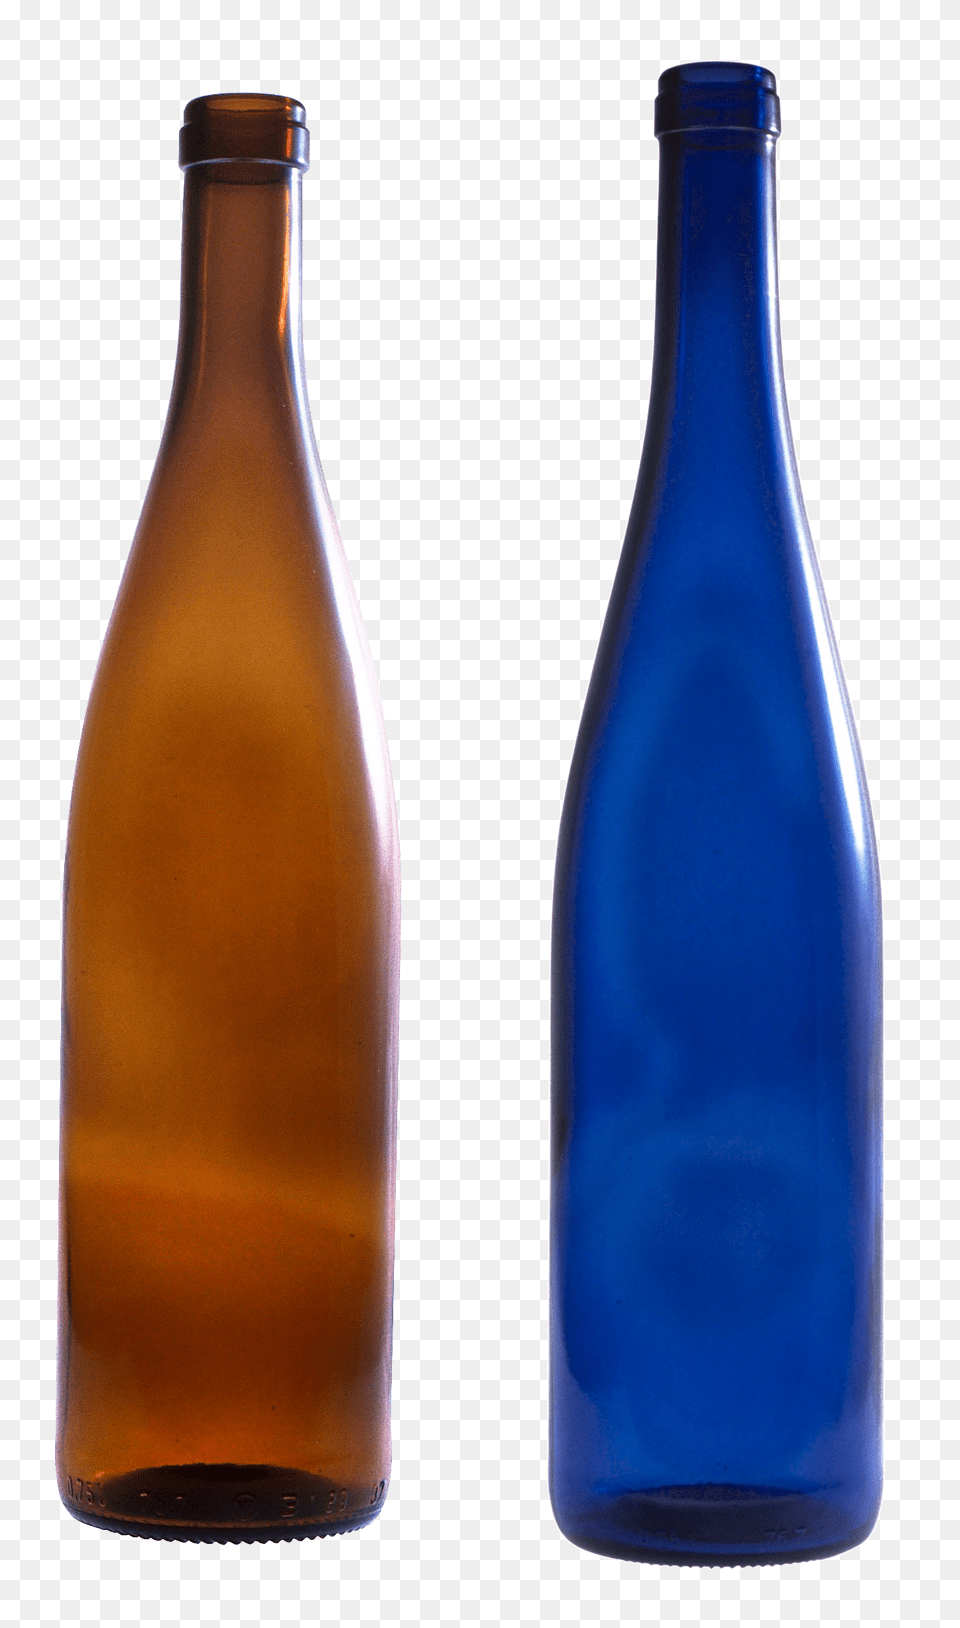 Bottle, Alcohol, Beer, Beverage, Beer Bottle Png Image